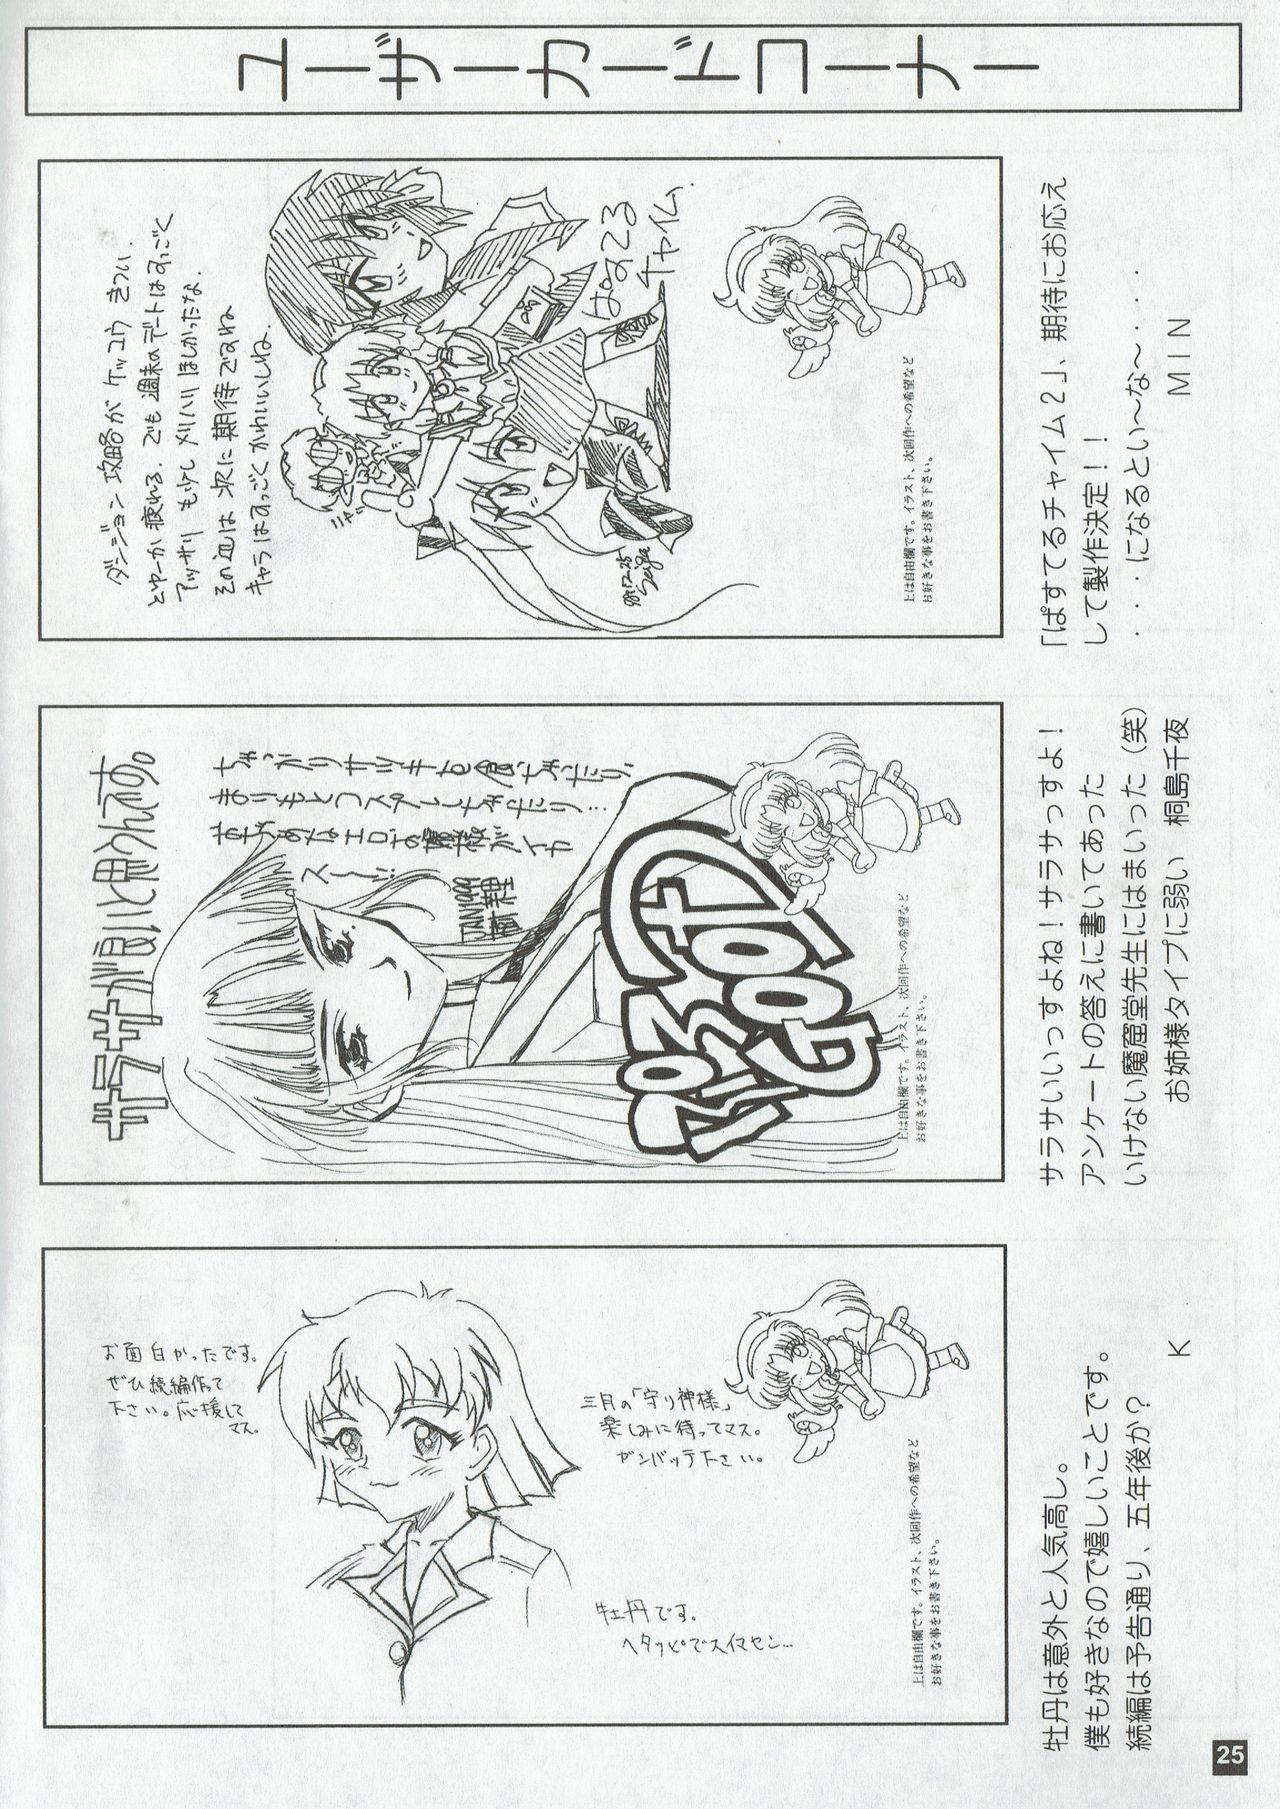 Arisu no Denchi Bakudan Vol. 04 24